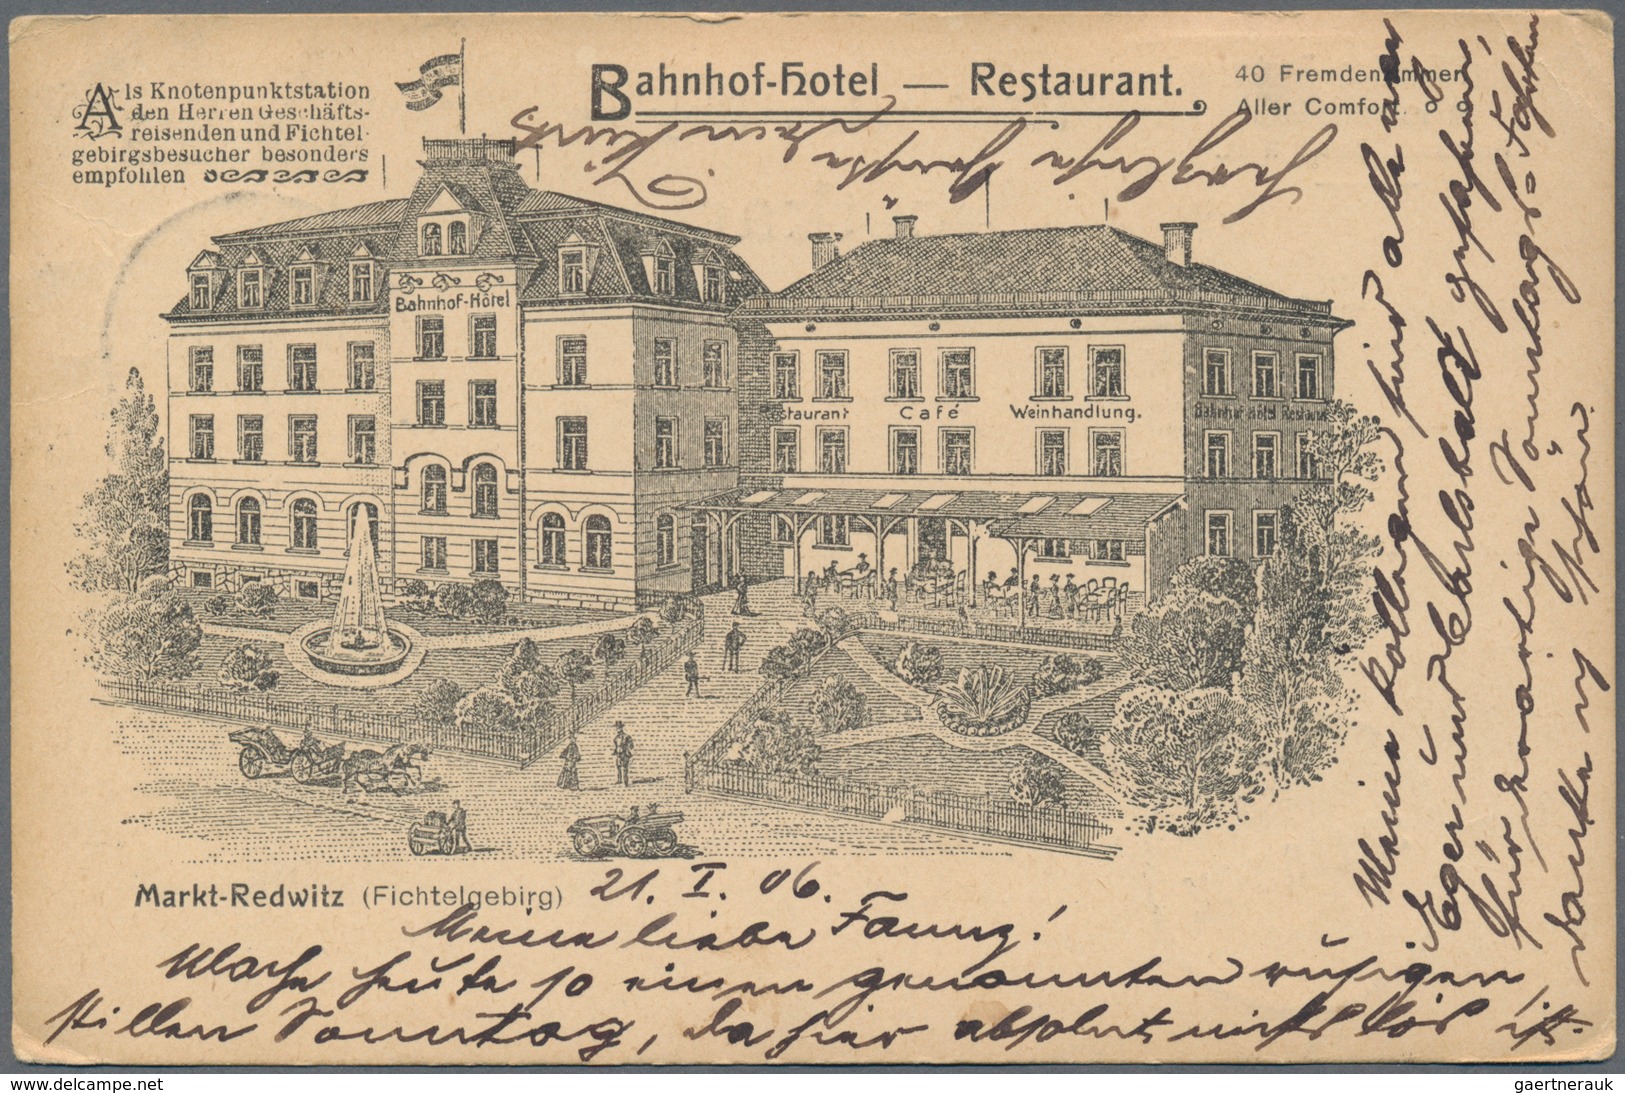 Ansichtskarten: Deutschland: 1898/1945 (meist): interessanter Posten von ca. 800 Ansichtskarten über